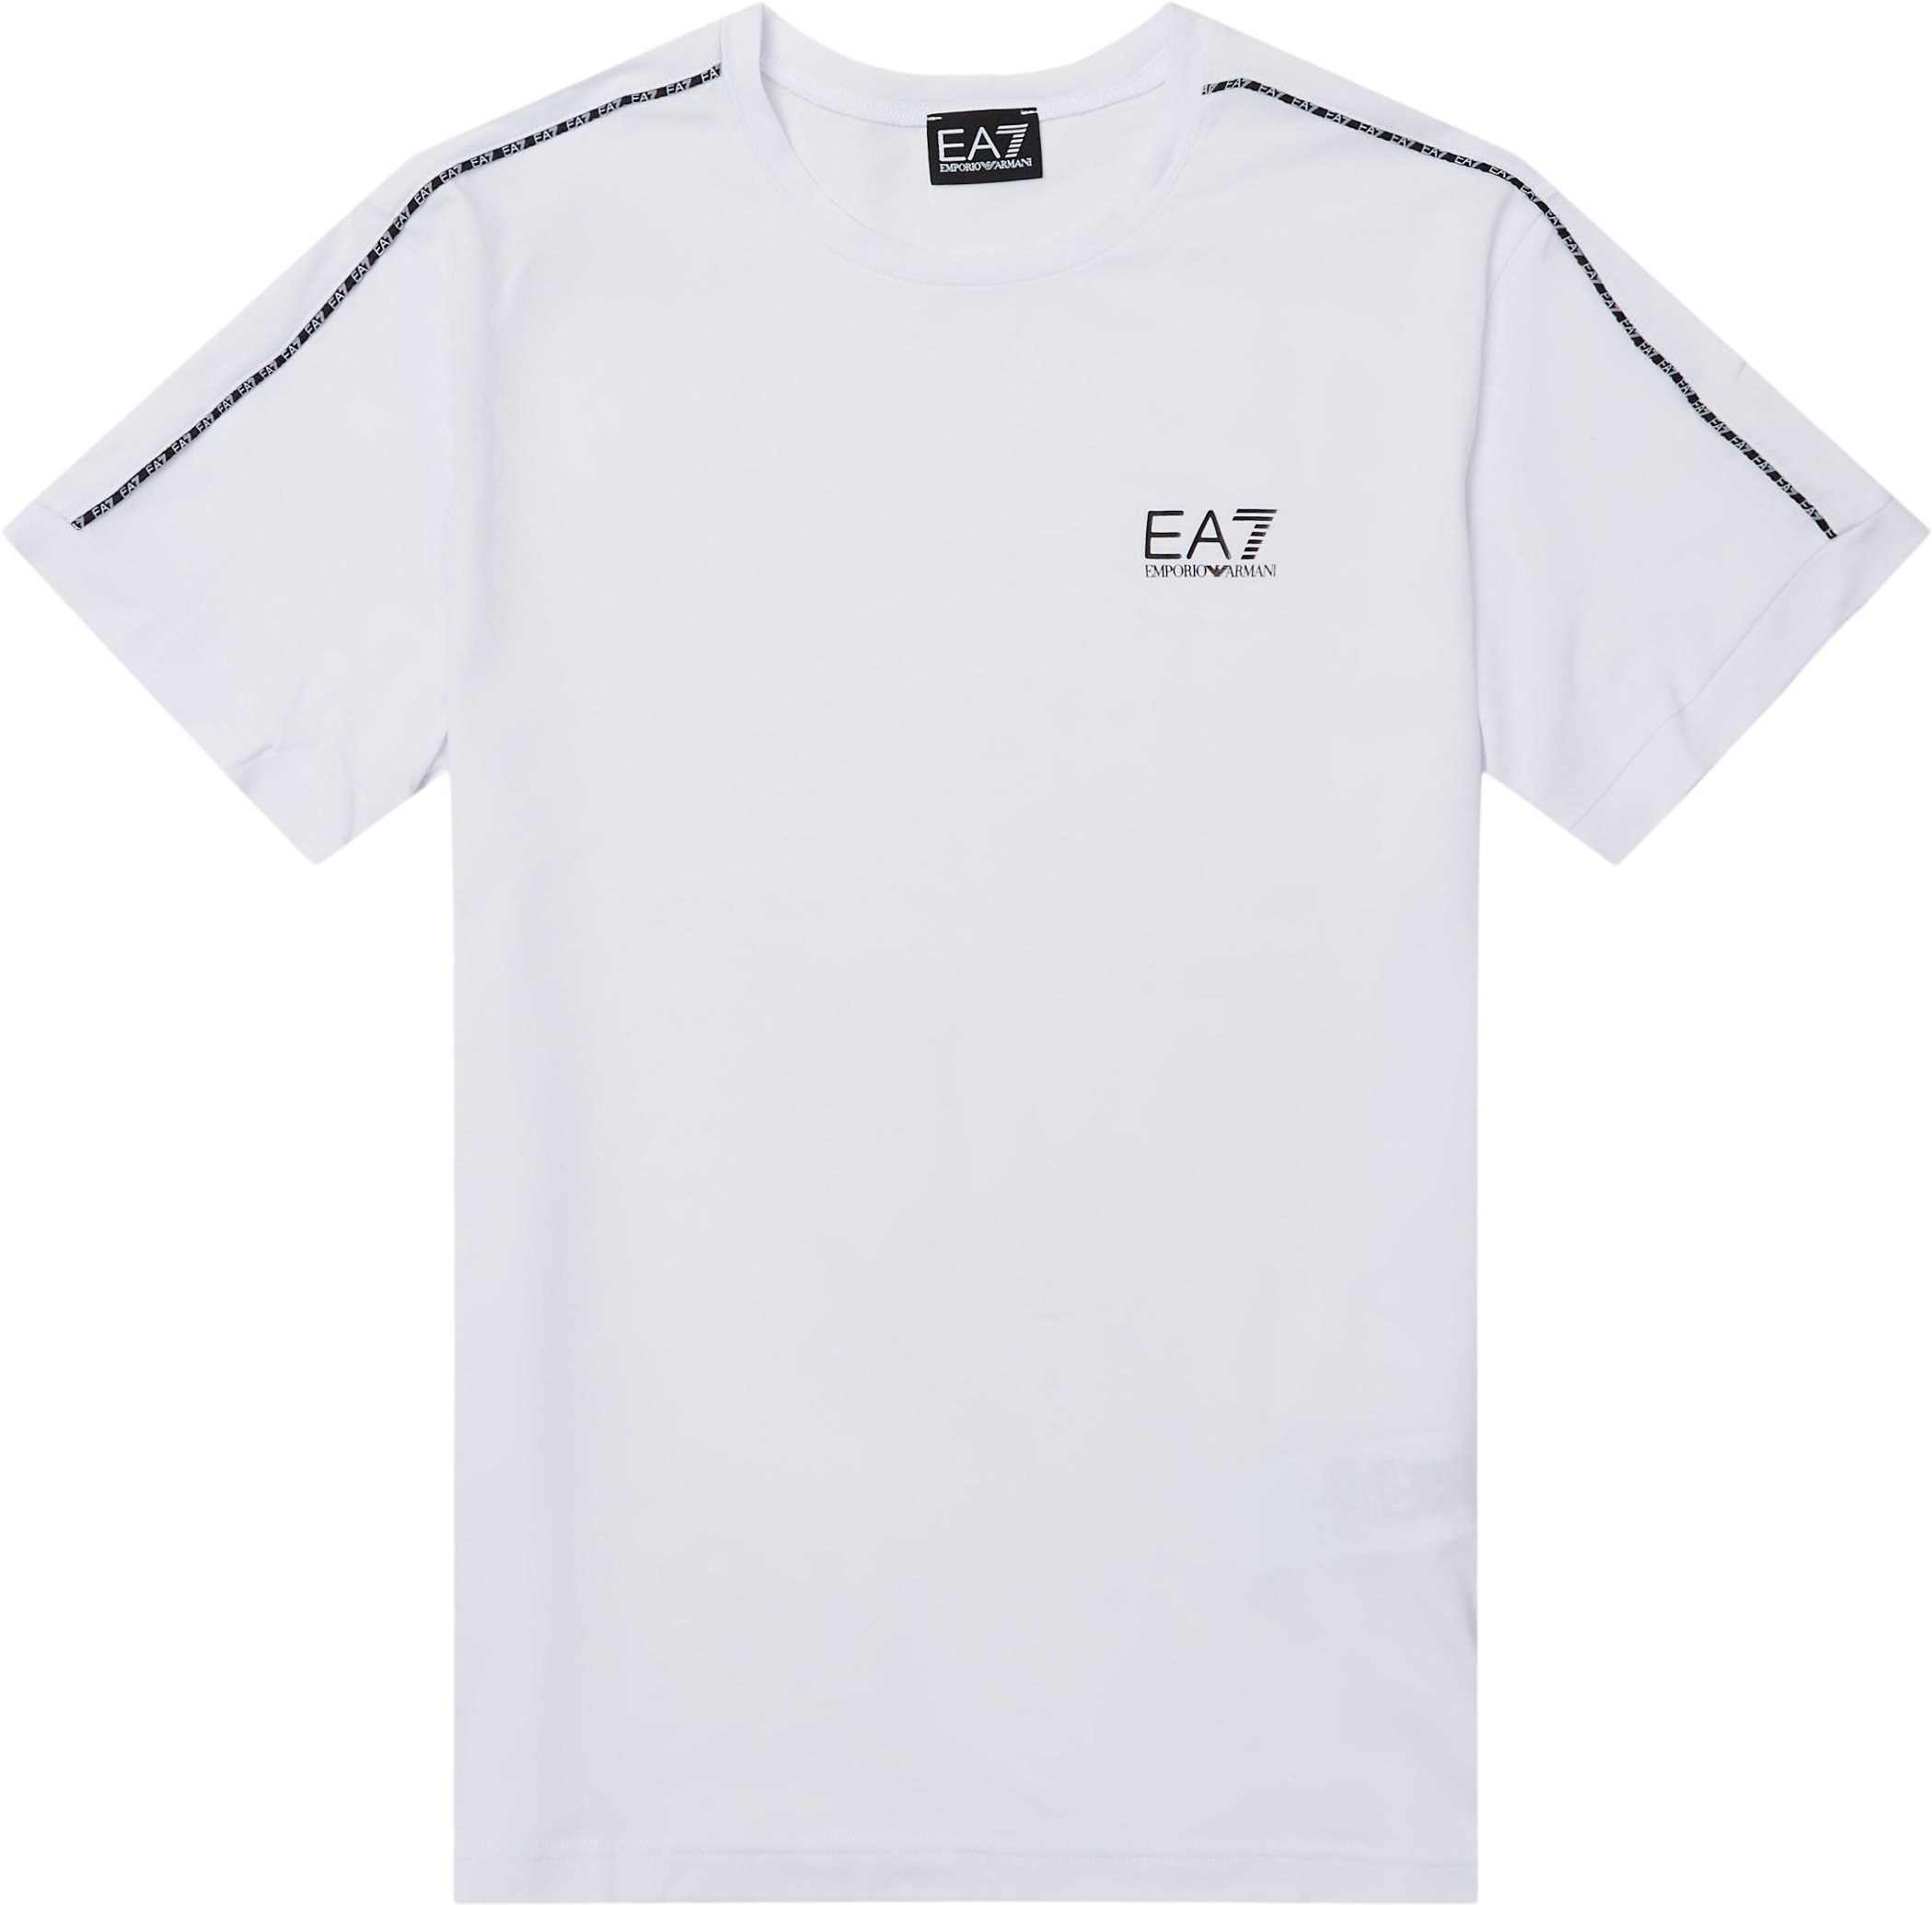 Pjfuz-3lpt31 Tee - T-shirts - Regular fit - Vit